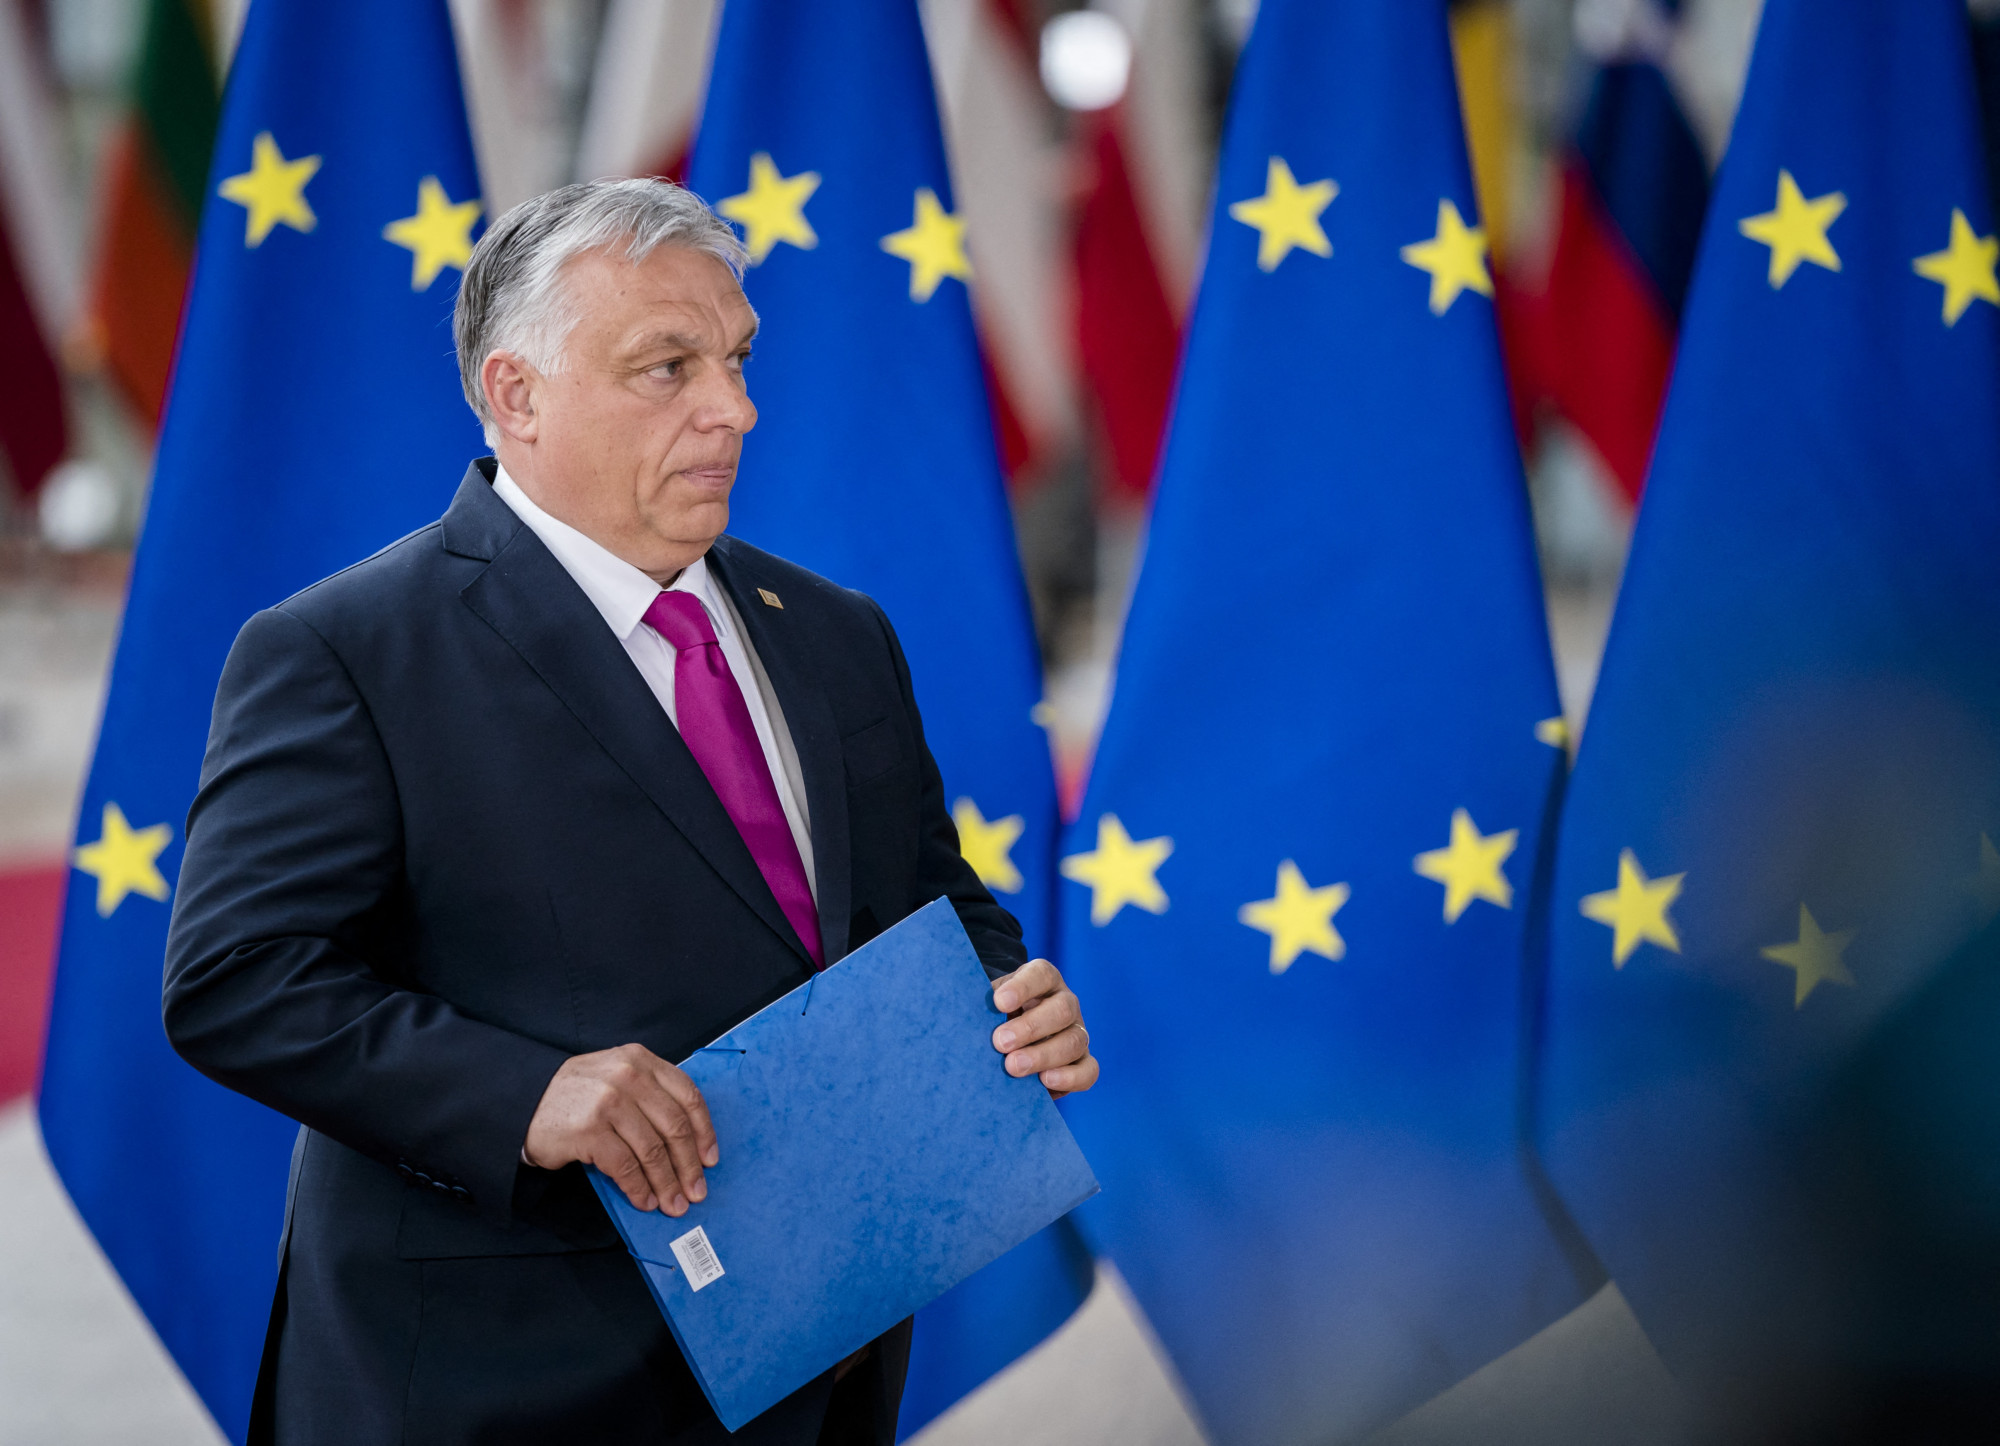 A FAZ szerint az Európai Bizottság javasolni fogja 7,5 milliárd eurónyi magyar támogatás befagyasztását